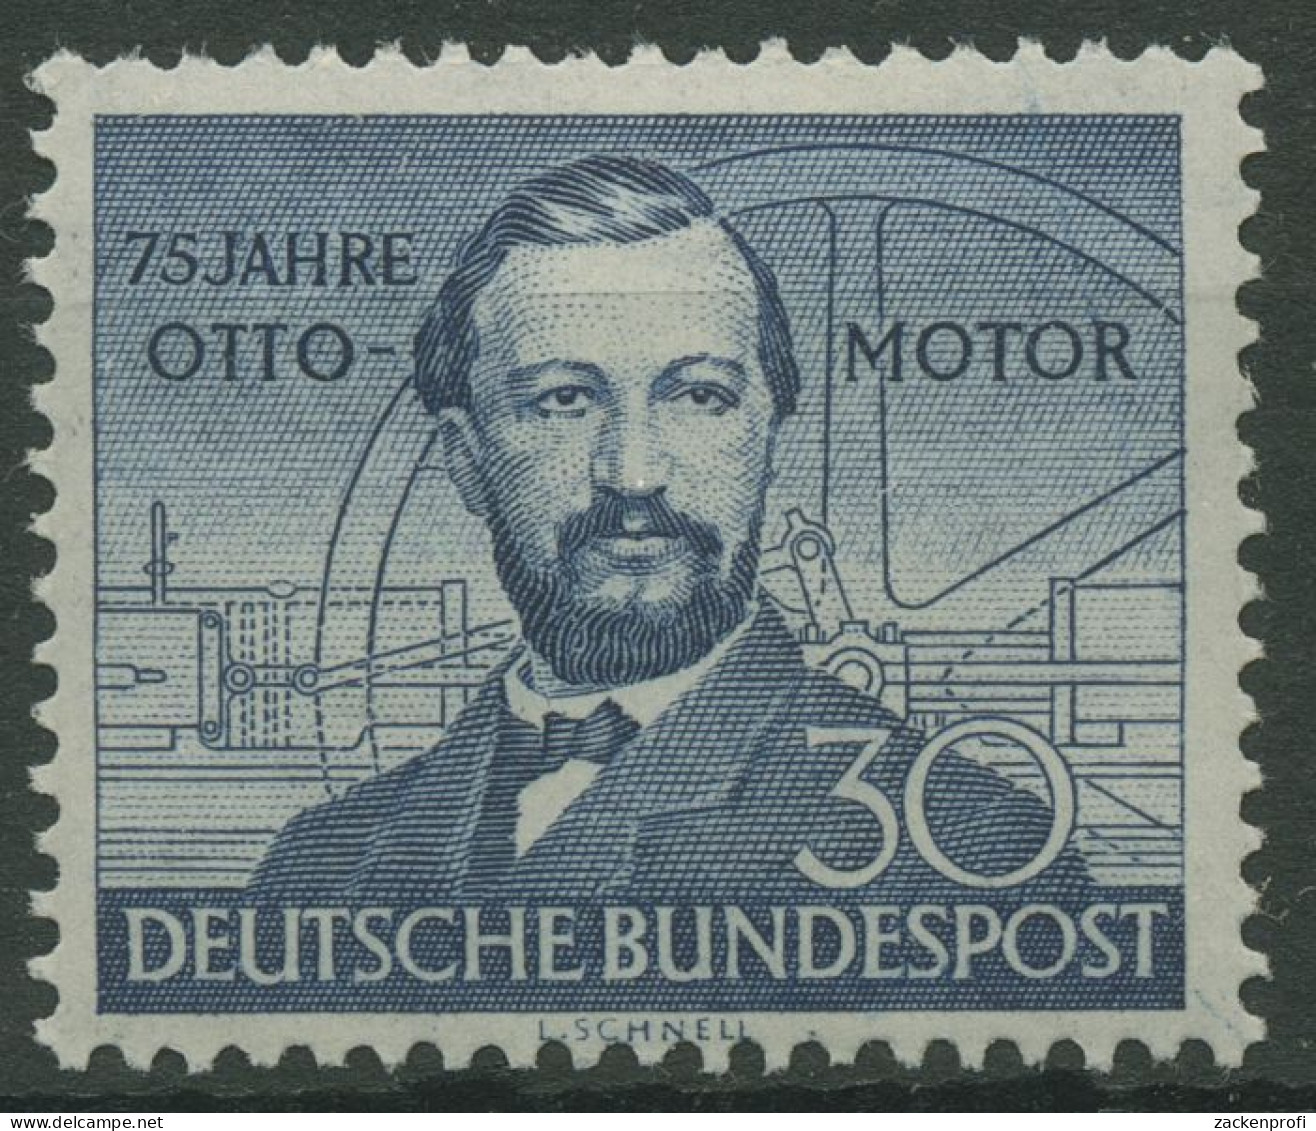 Bund 1952 Nikolaus Otto, Ottomotor 150 Postfrisch, Zahnfehler (R19459) - Nuovi